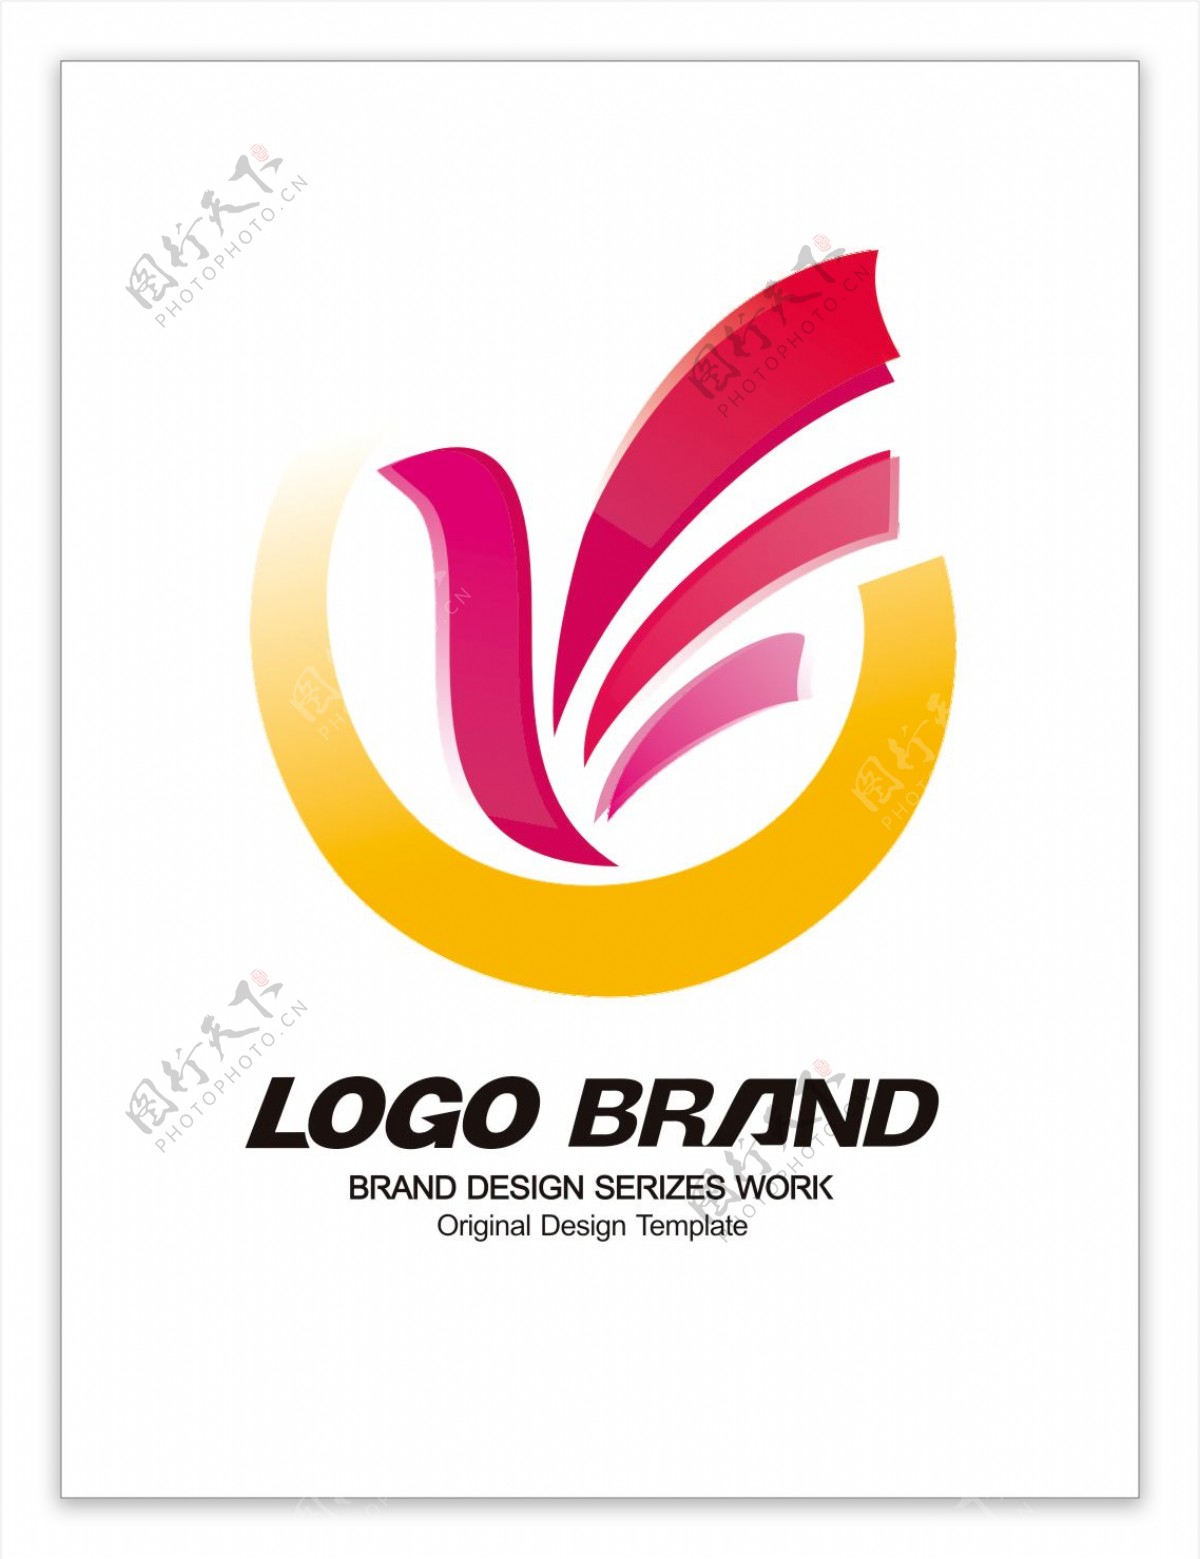 创意飞鸟紫红色公司标志LOGO设计